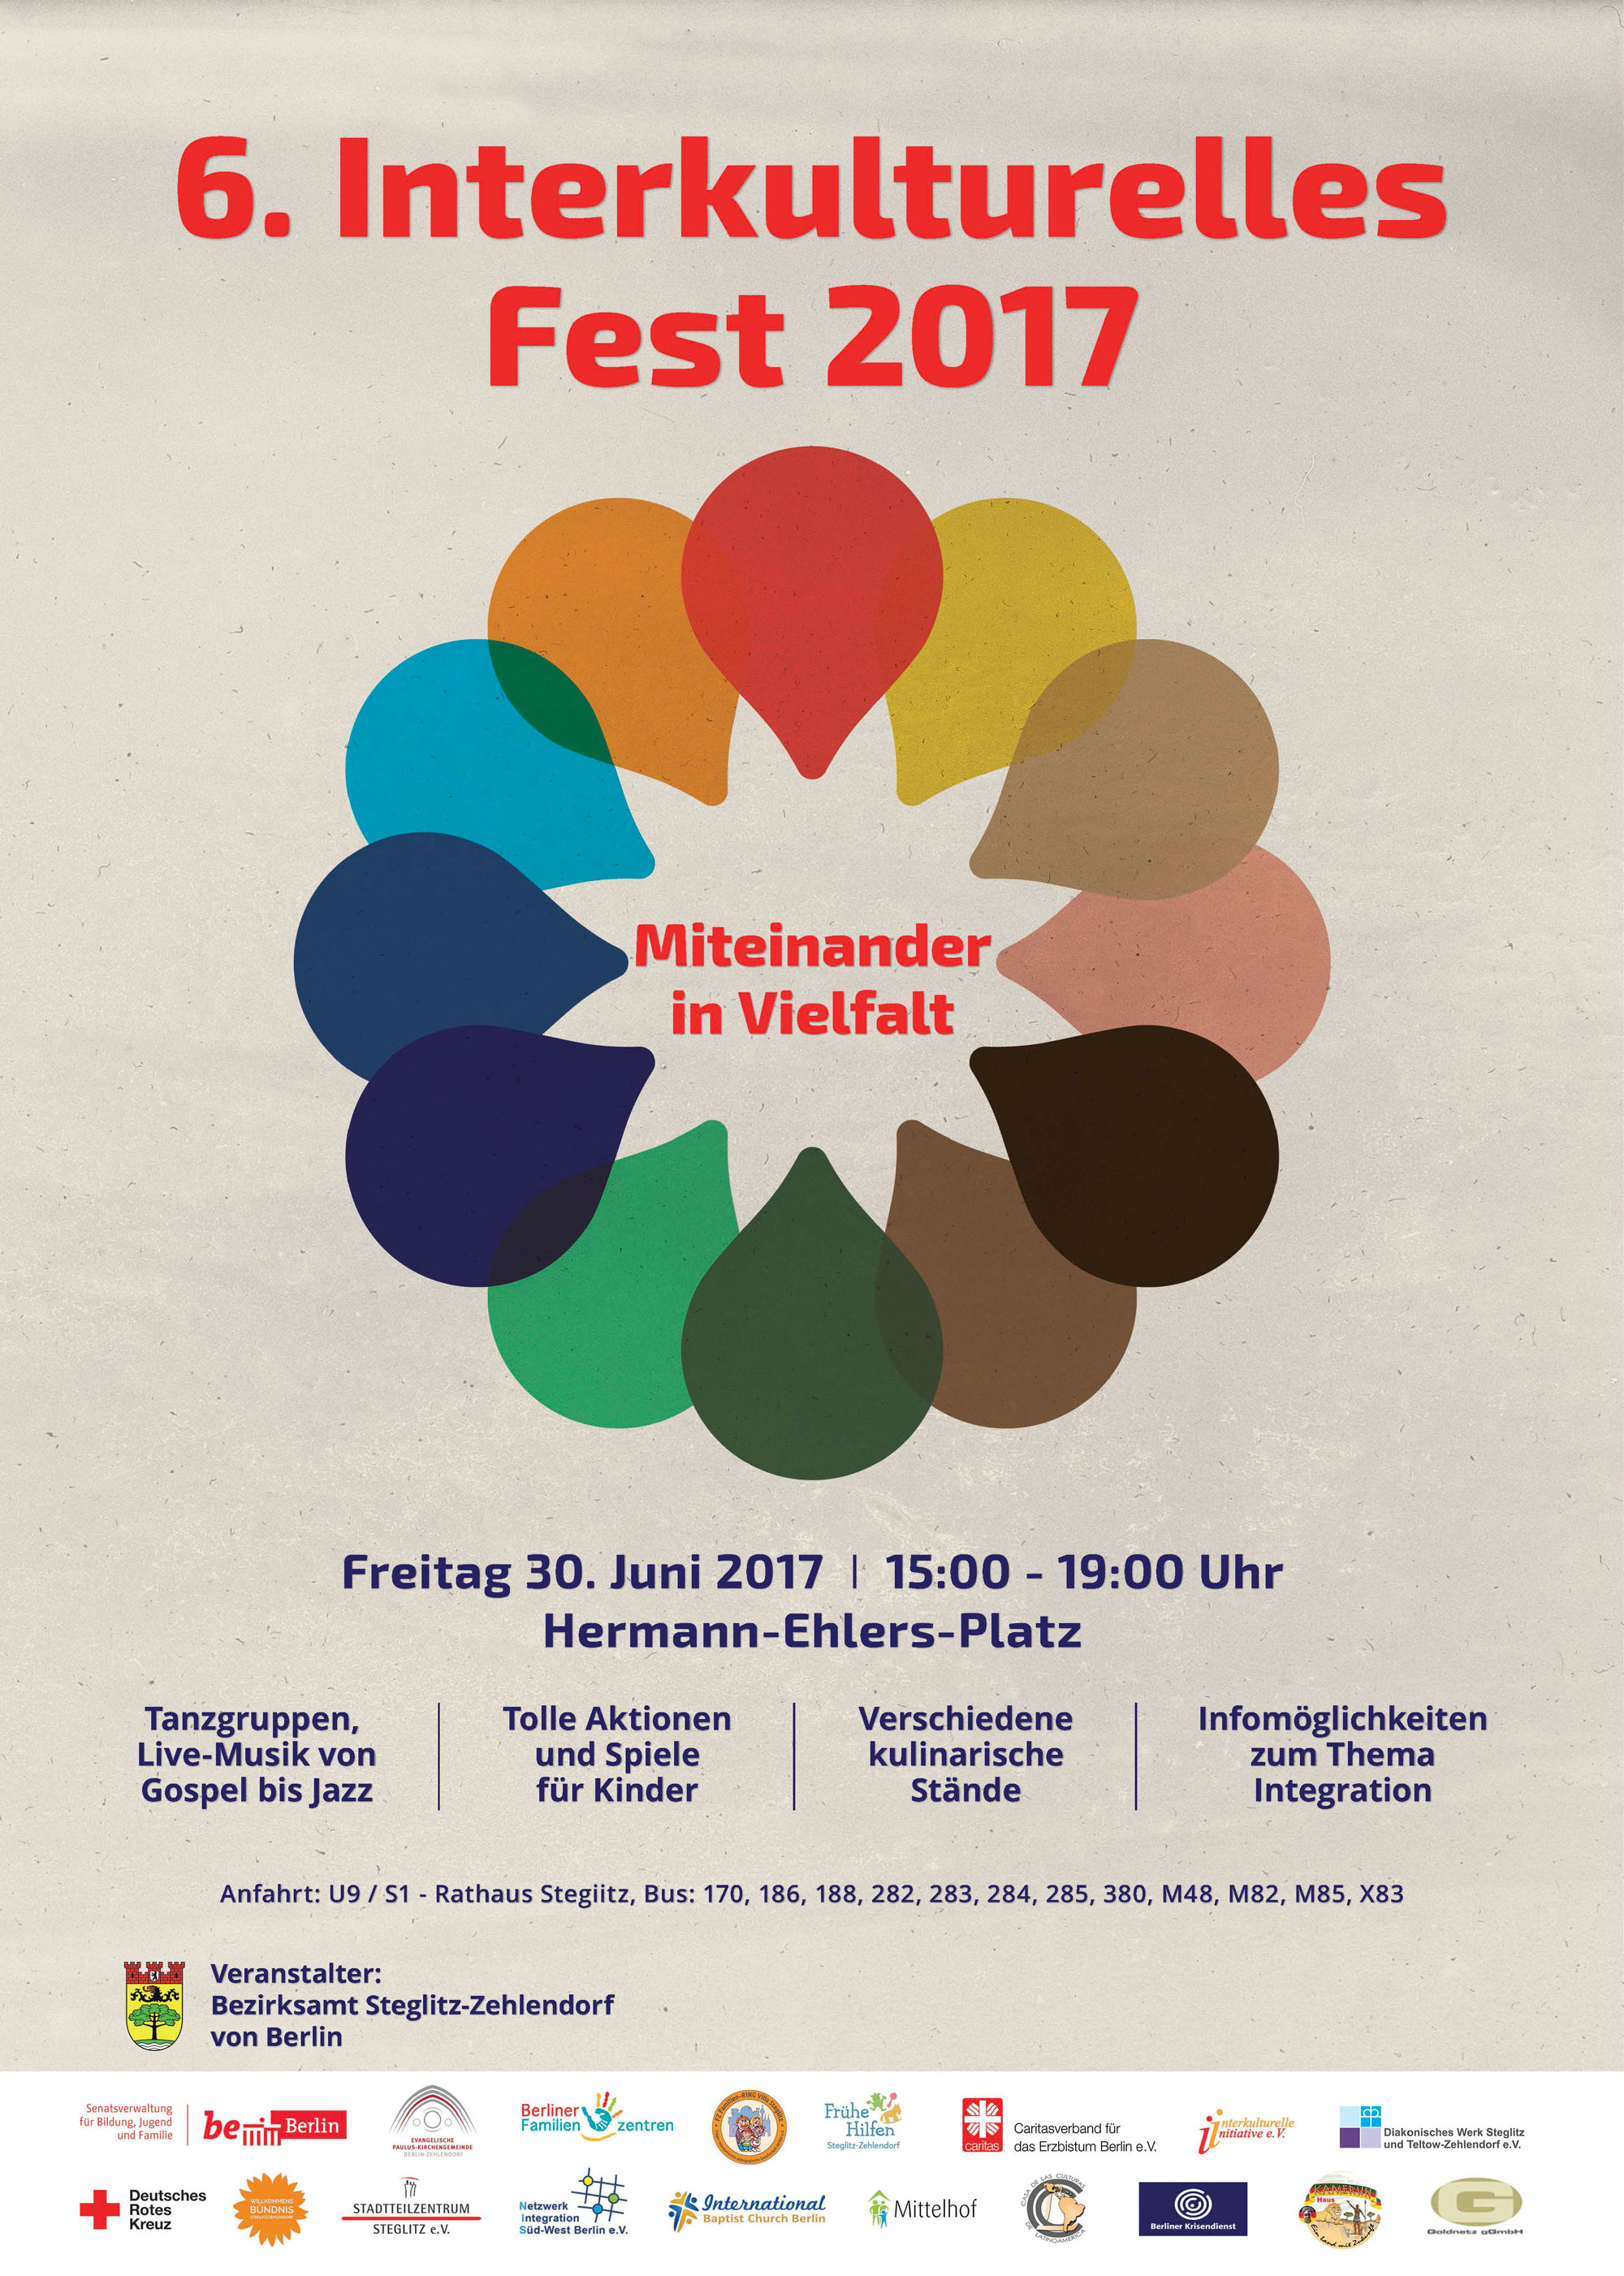 6. Interkulturelles Fest in Steglitz-Zehlendorf